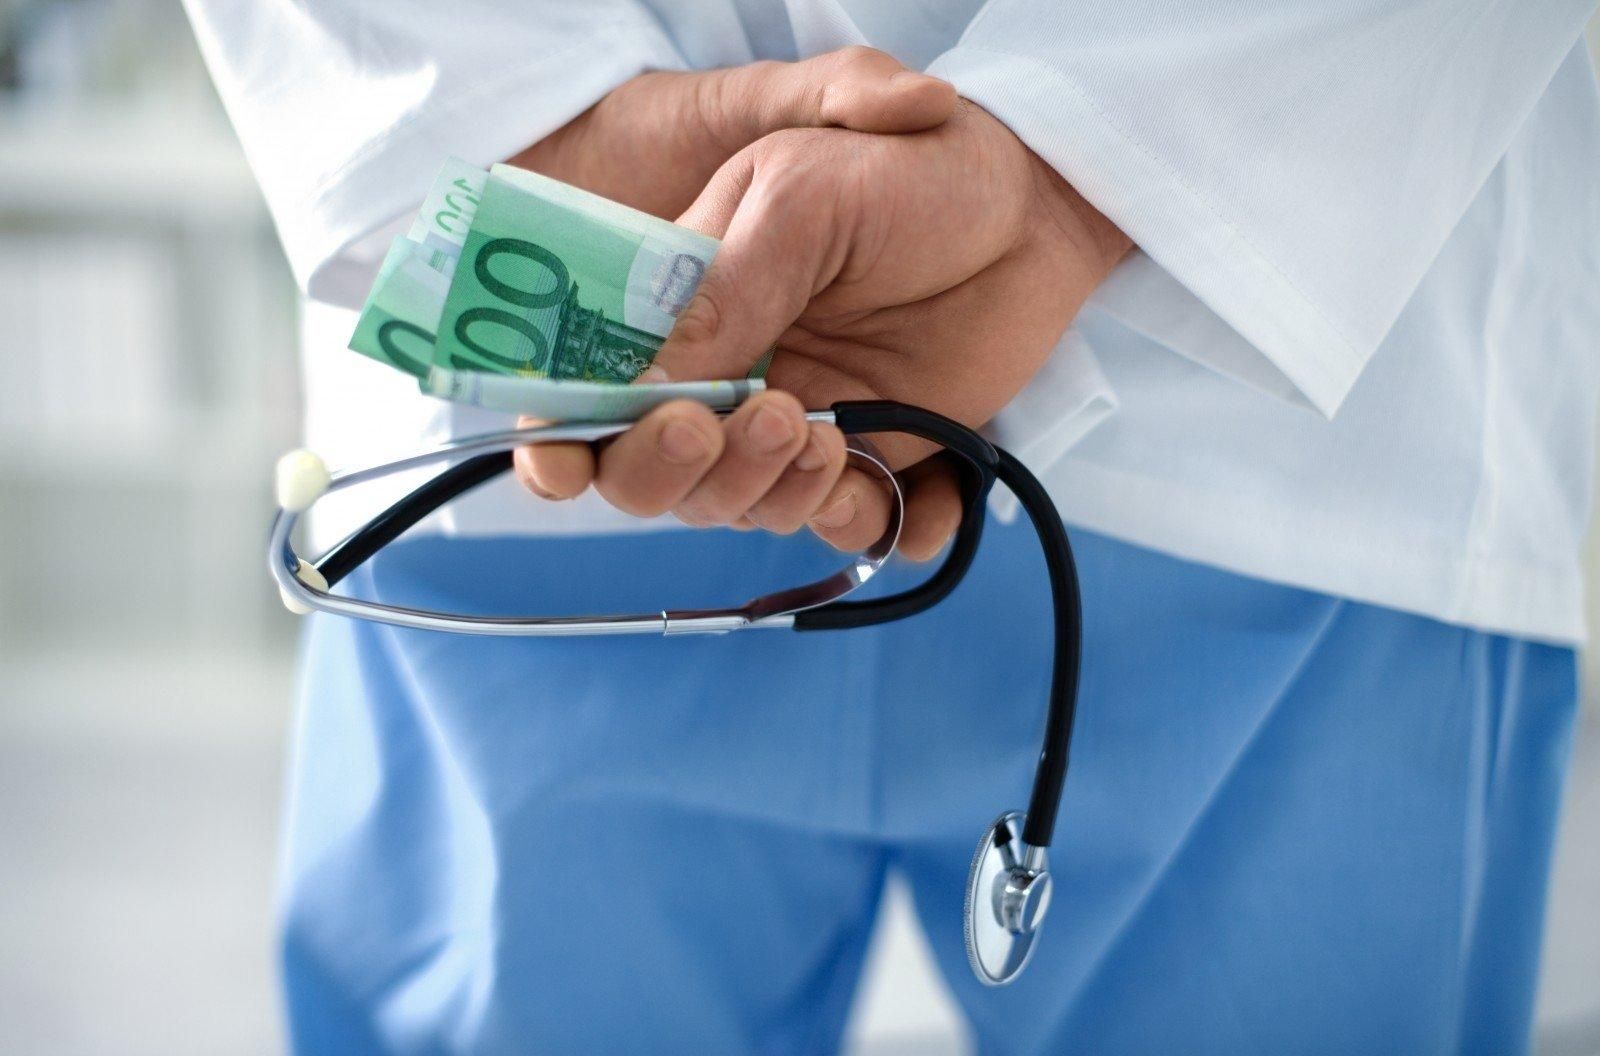 Еженедельно должны были носить определенную сумму "наверх", – медик о коррупции в больнице Киева